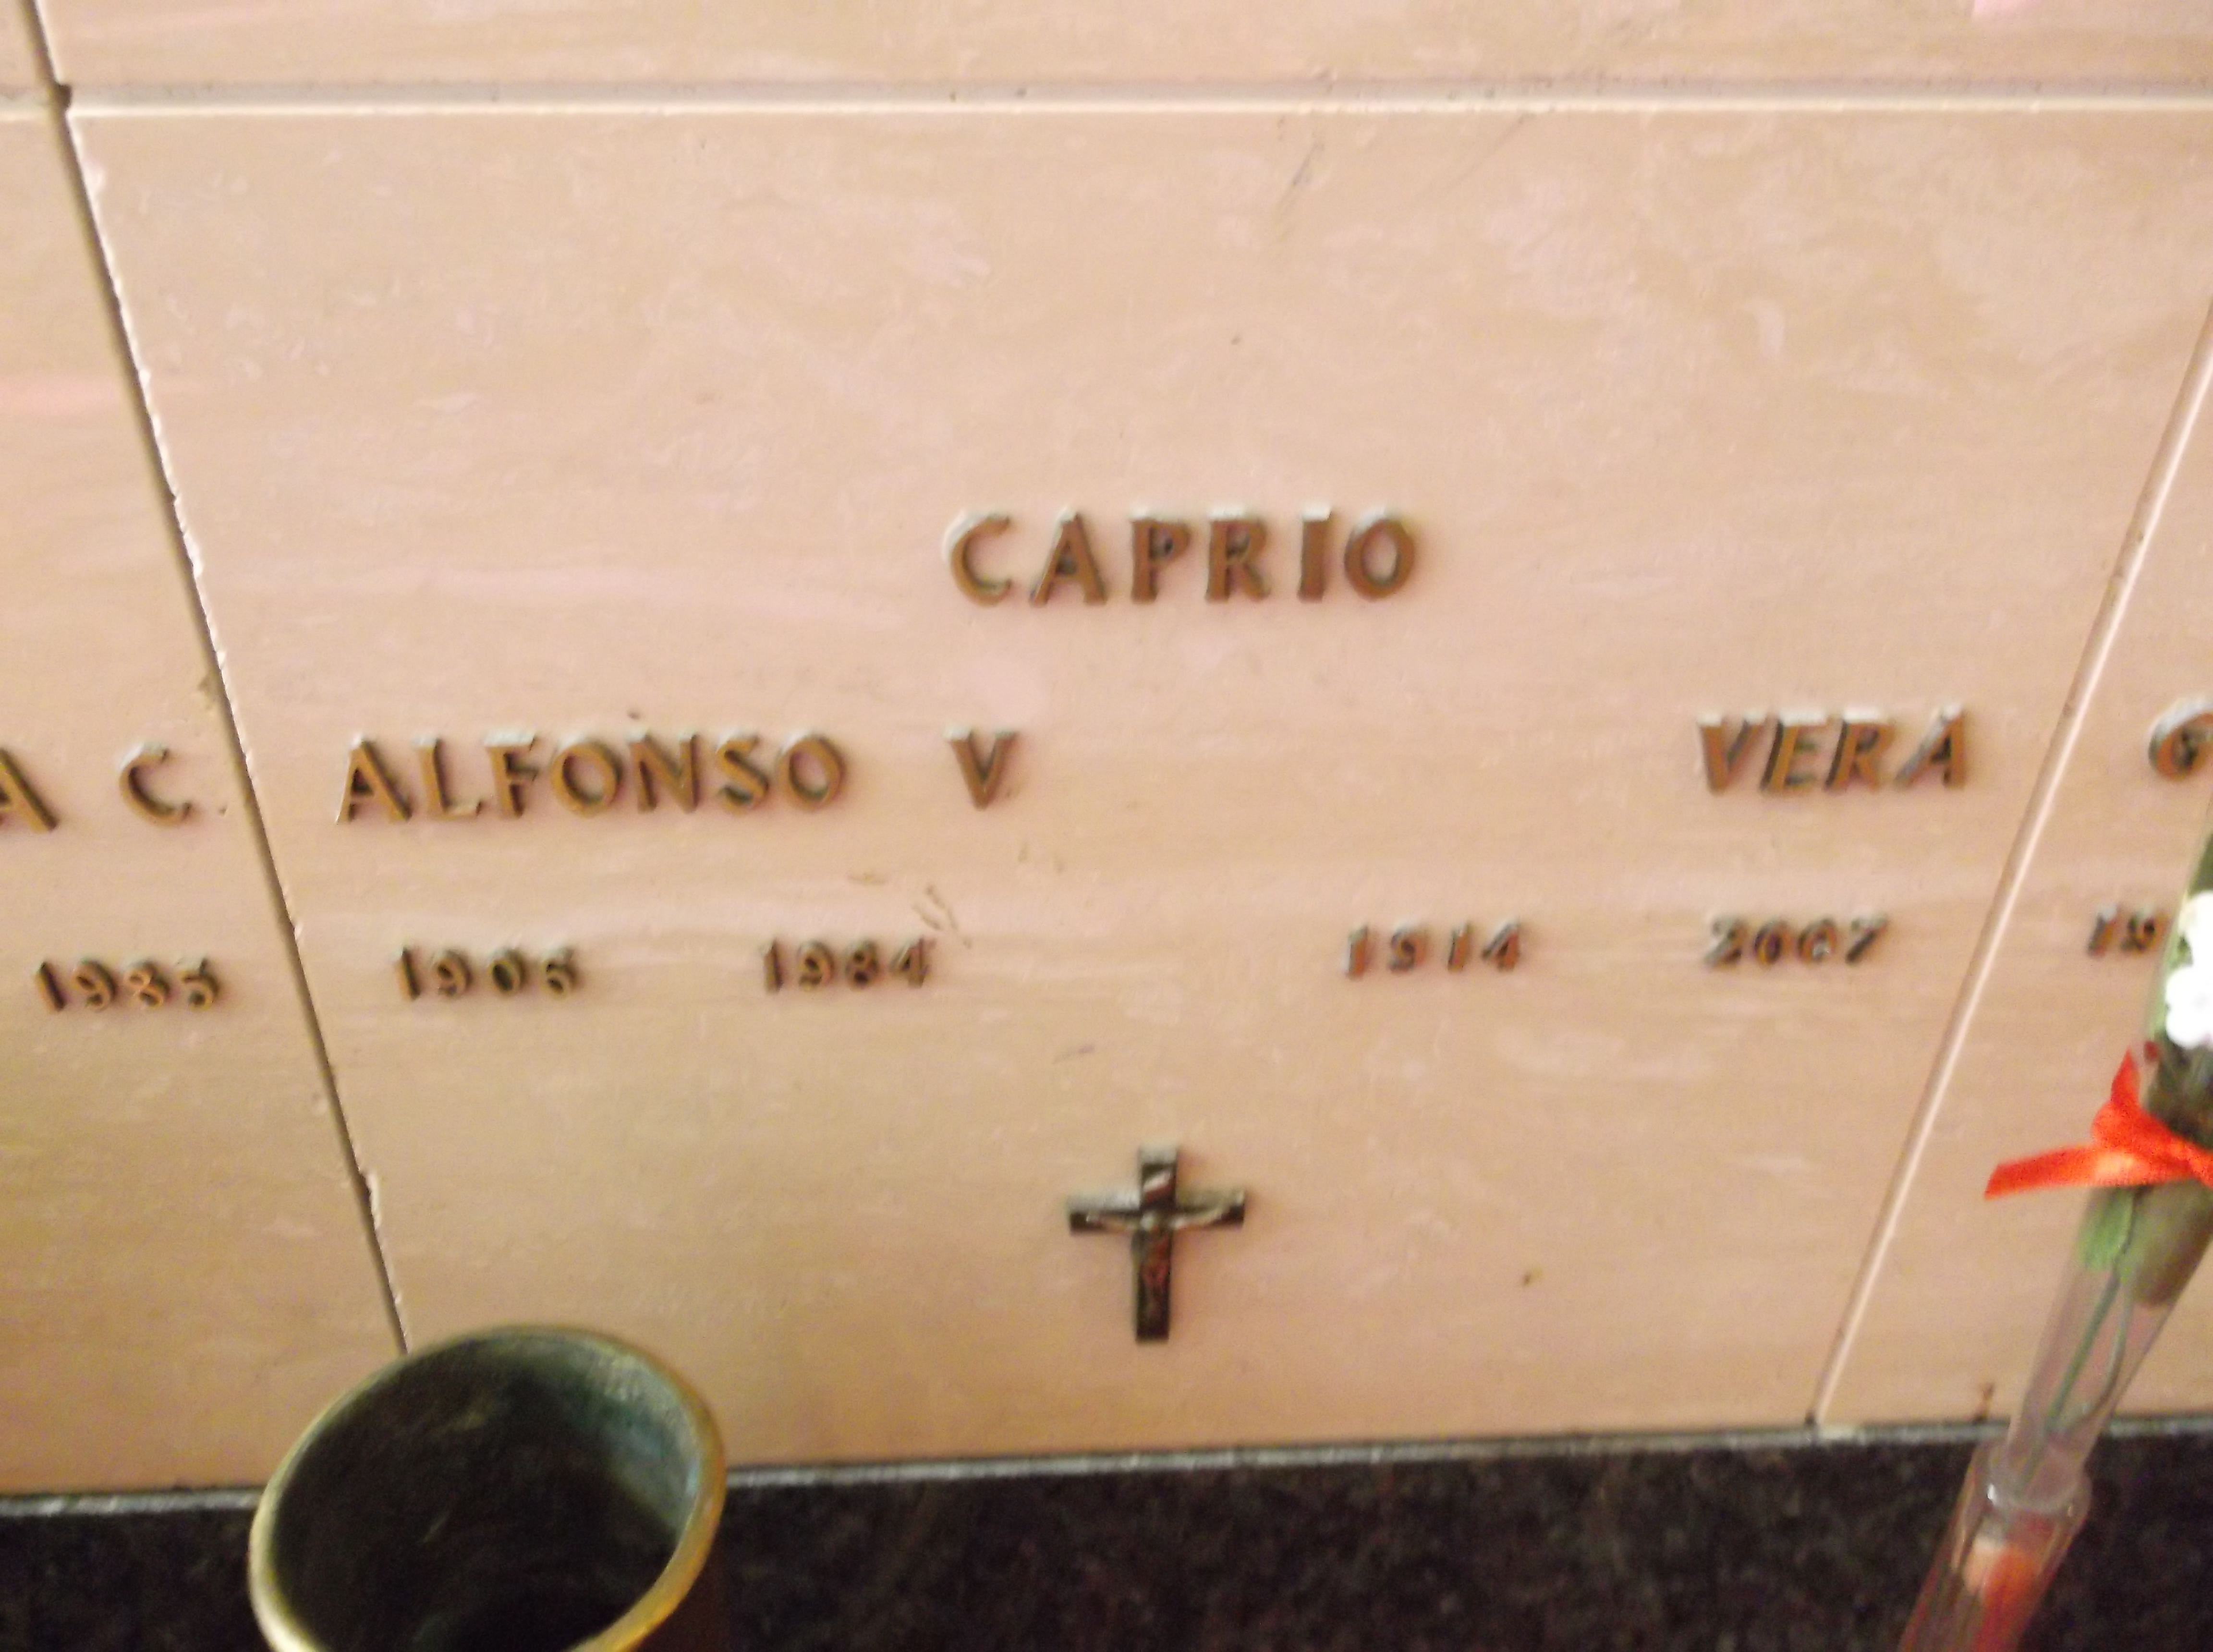 Alfonso V Caprio